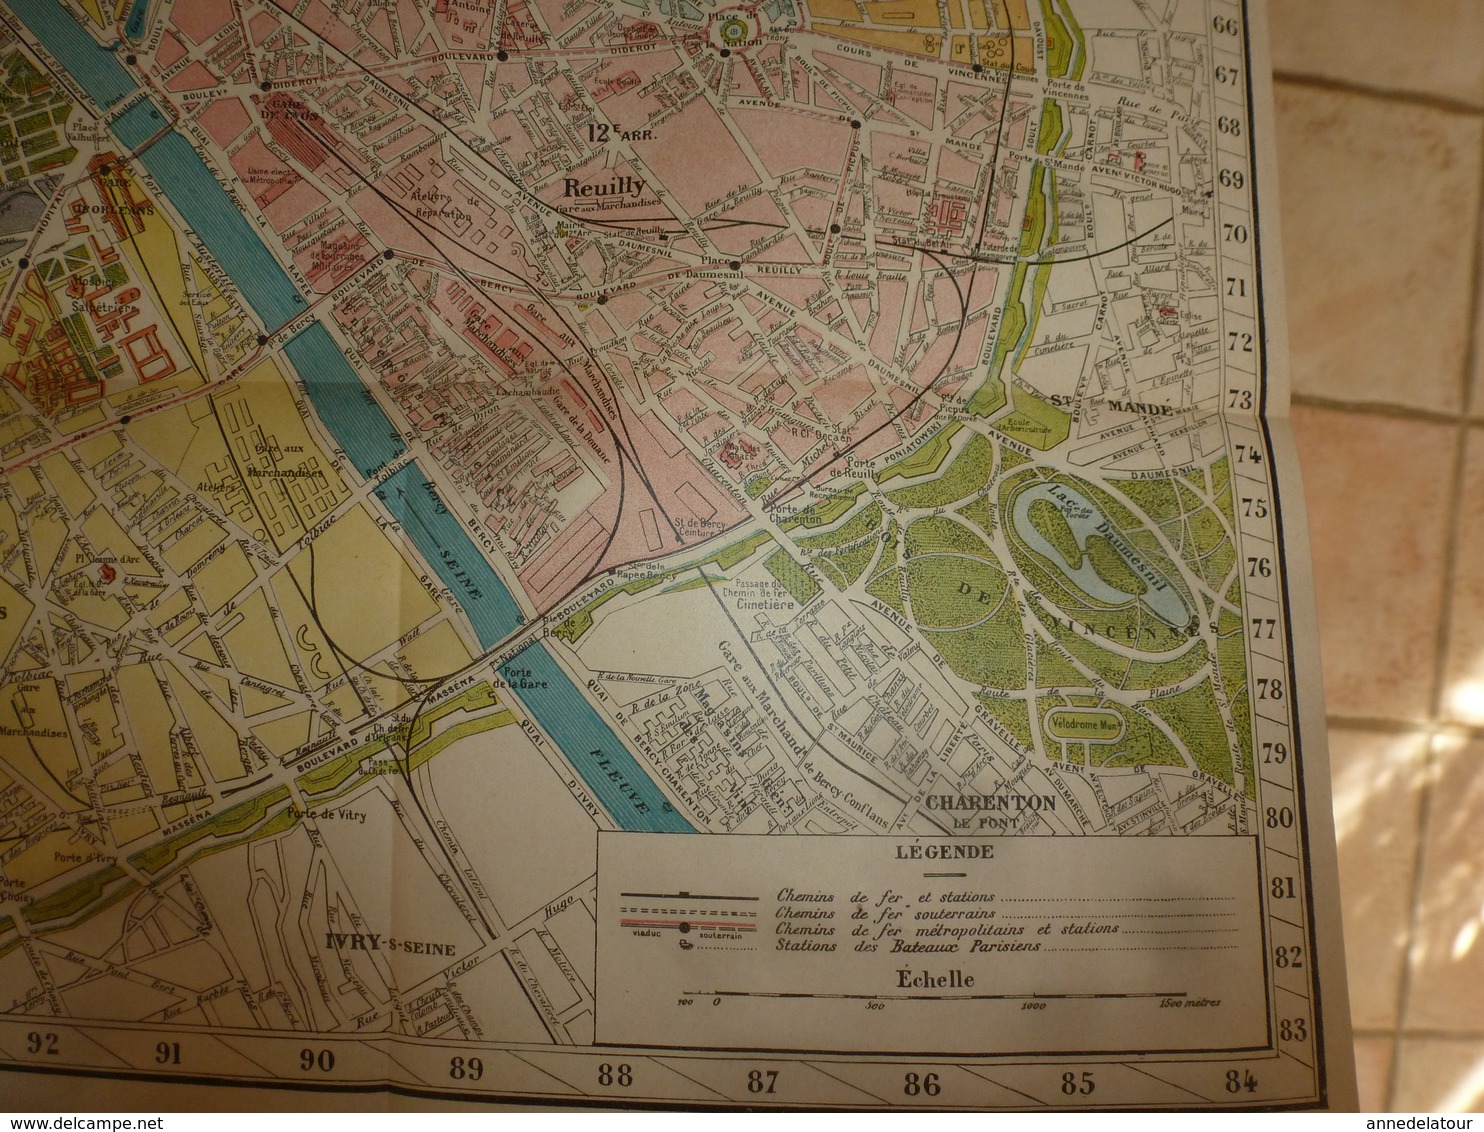 1914 Agenda-Buvard du BON MARCHÉ (Lithographies-Menus-Théâtres-Réclames-Publicités-Autobus-Tram-Métro -Plan de Paris;etc